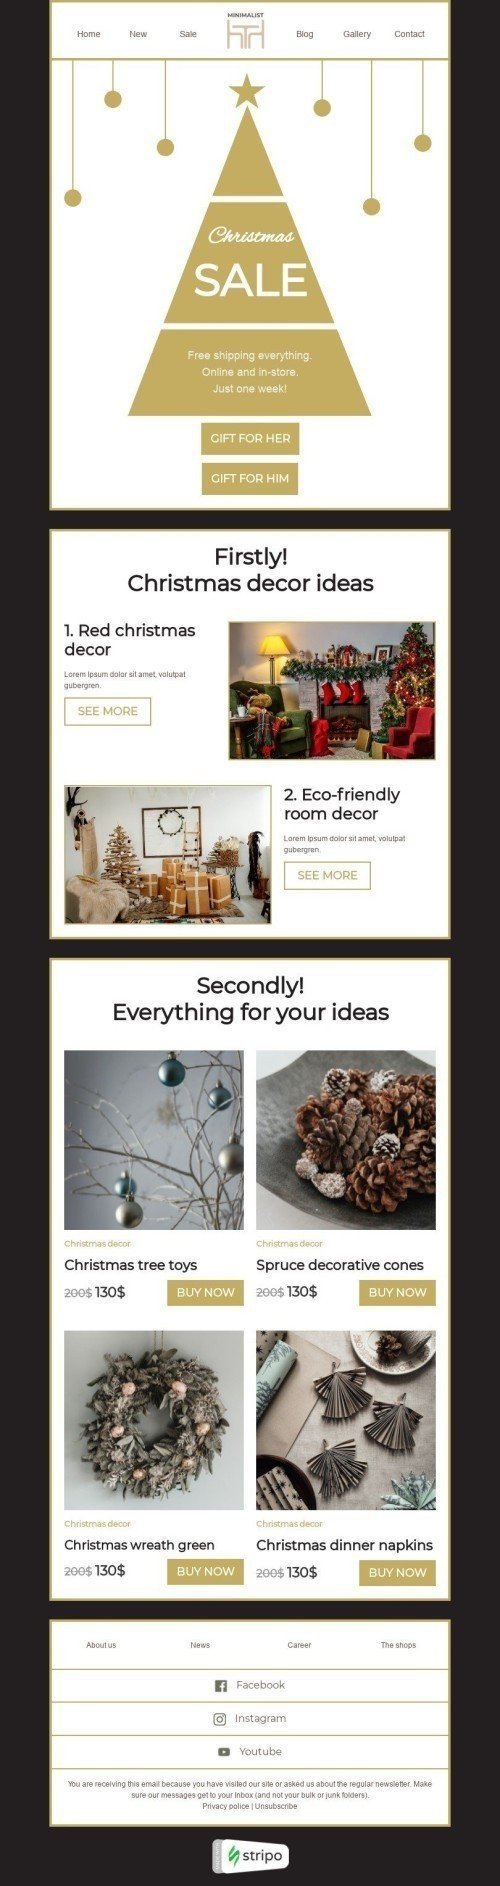 Plantilla de correo electrónico «Ideas de decoración navideña» de Navidad para la industria de Muebles, interior y bricolaje Vista de escritorio